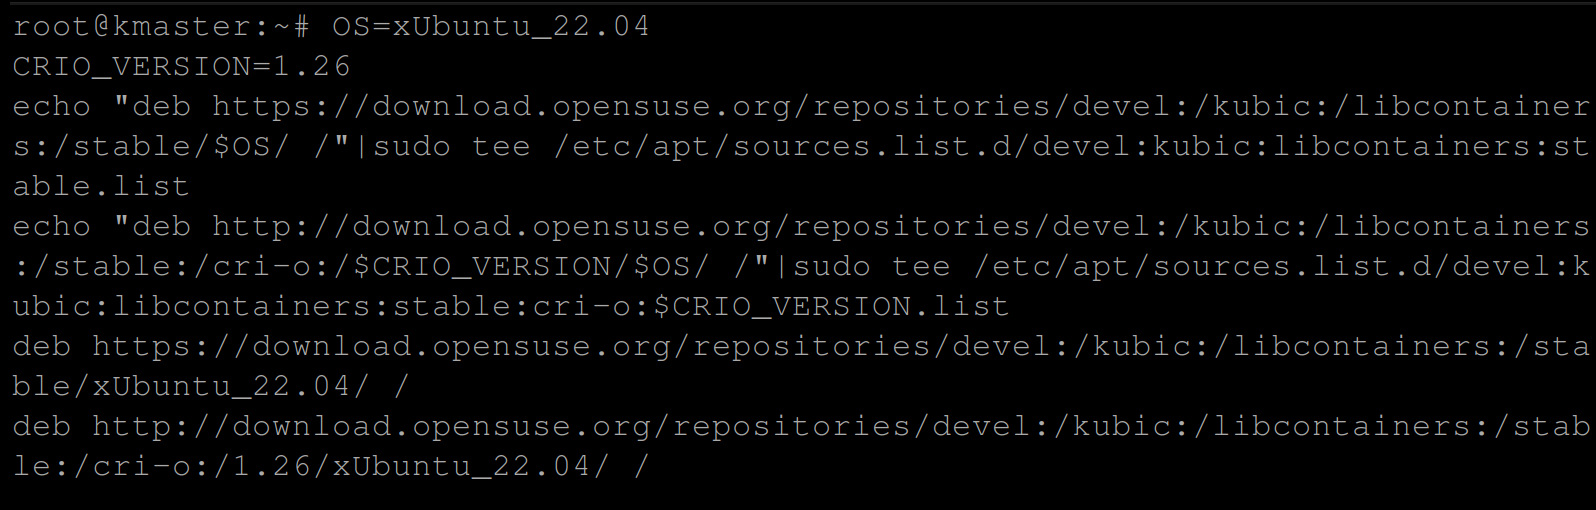 Adding the CRI-O repository from openSUSE